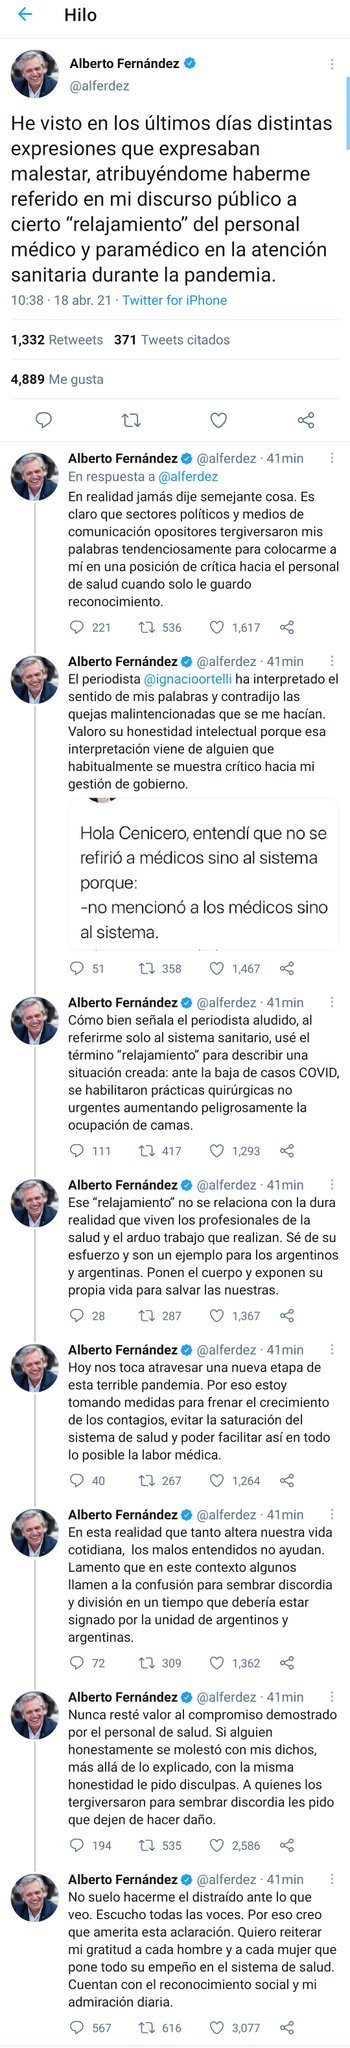 Alberto Fernández negó haber dicho que "el sistema de salud se había relajado" y le echó la culpa a los medios